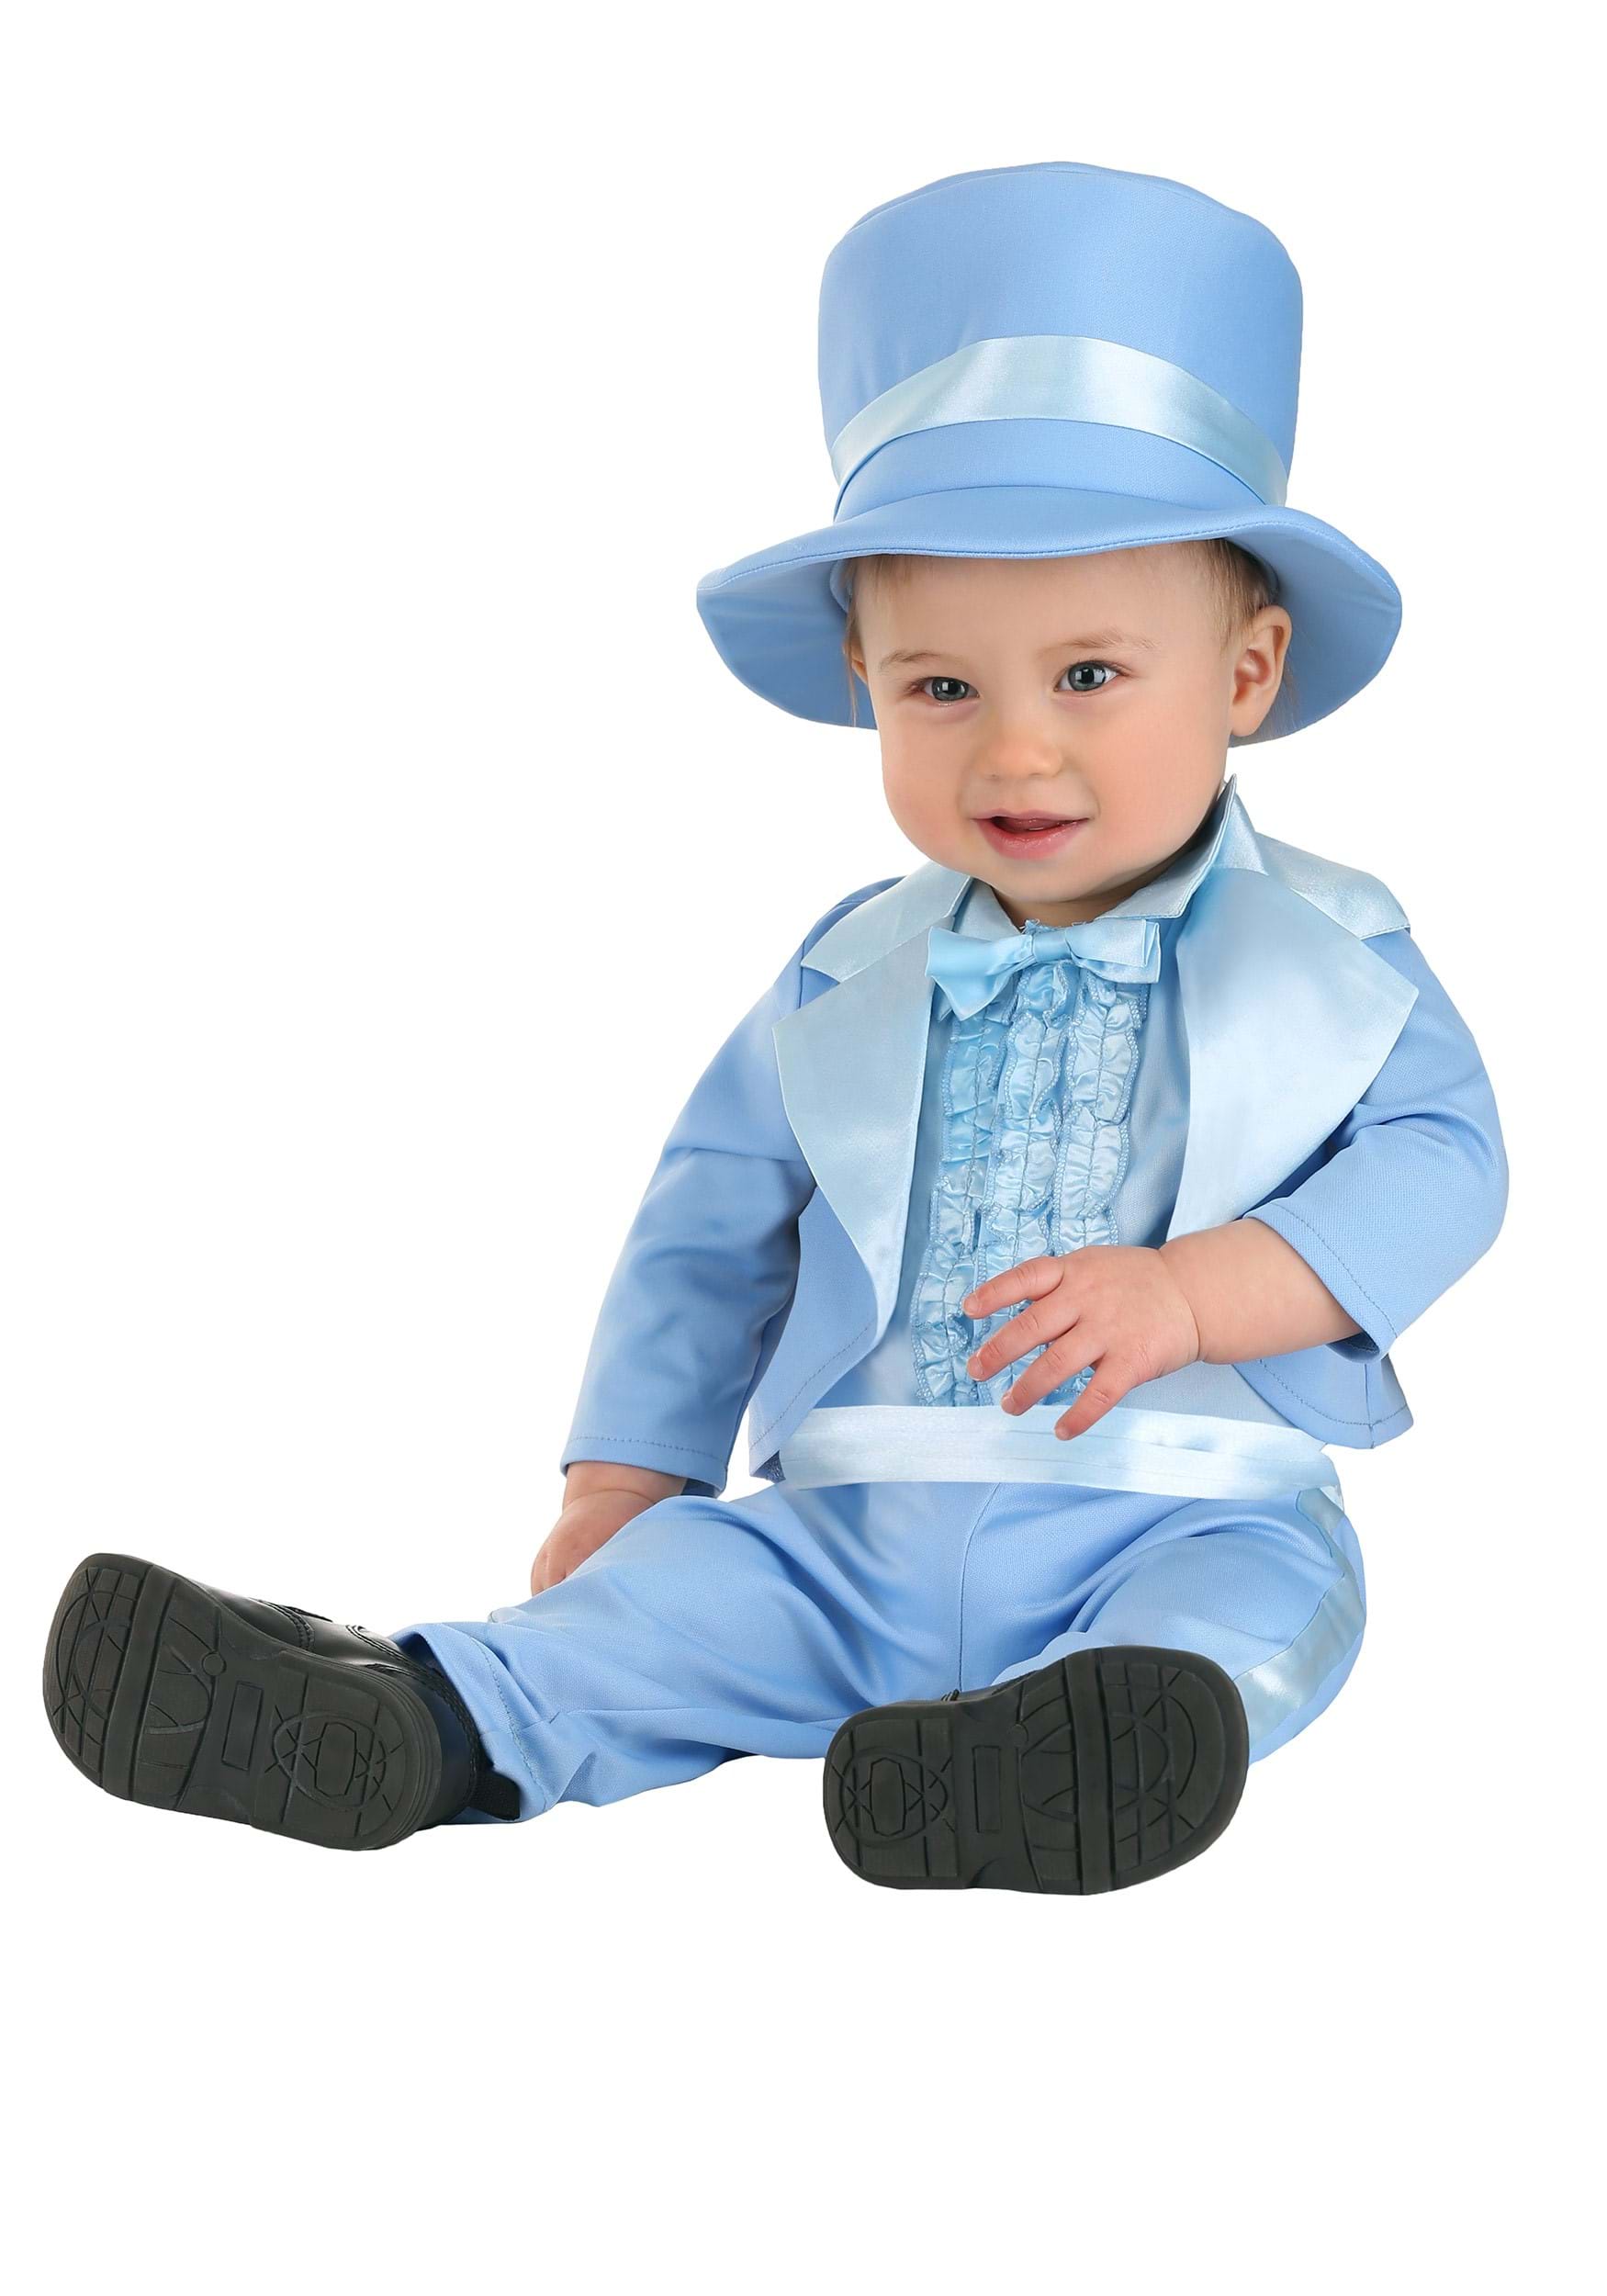 Photos - Fancy Dress FUN Costumes Powder Blue Infant Suit Costume